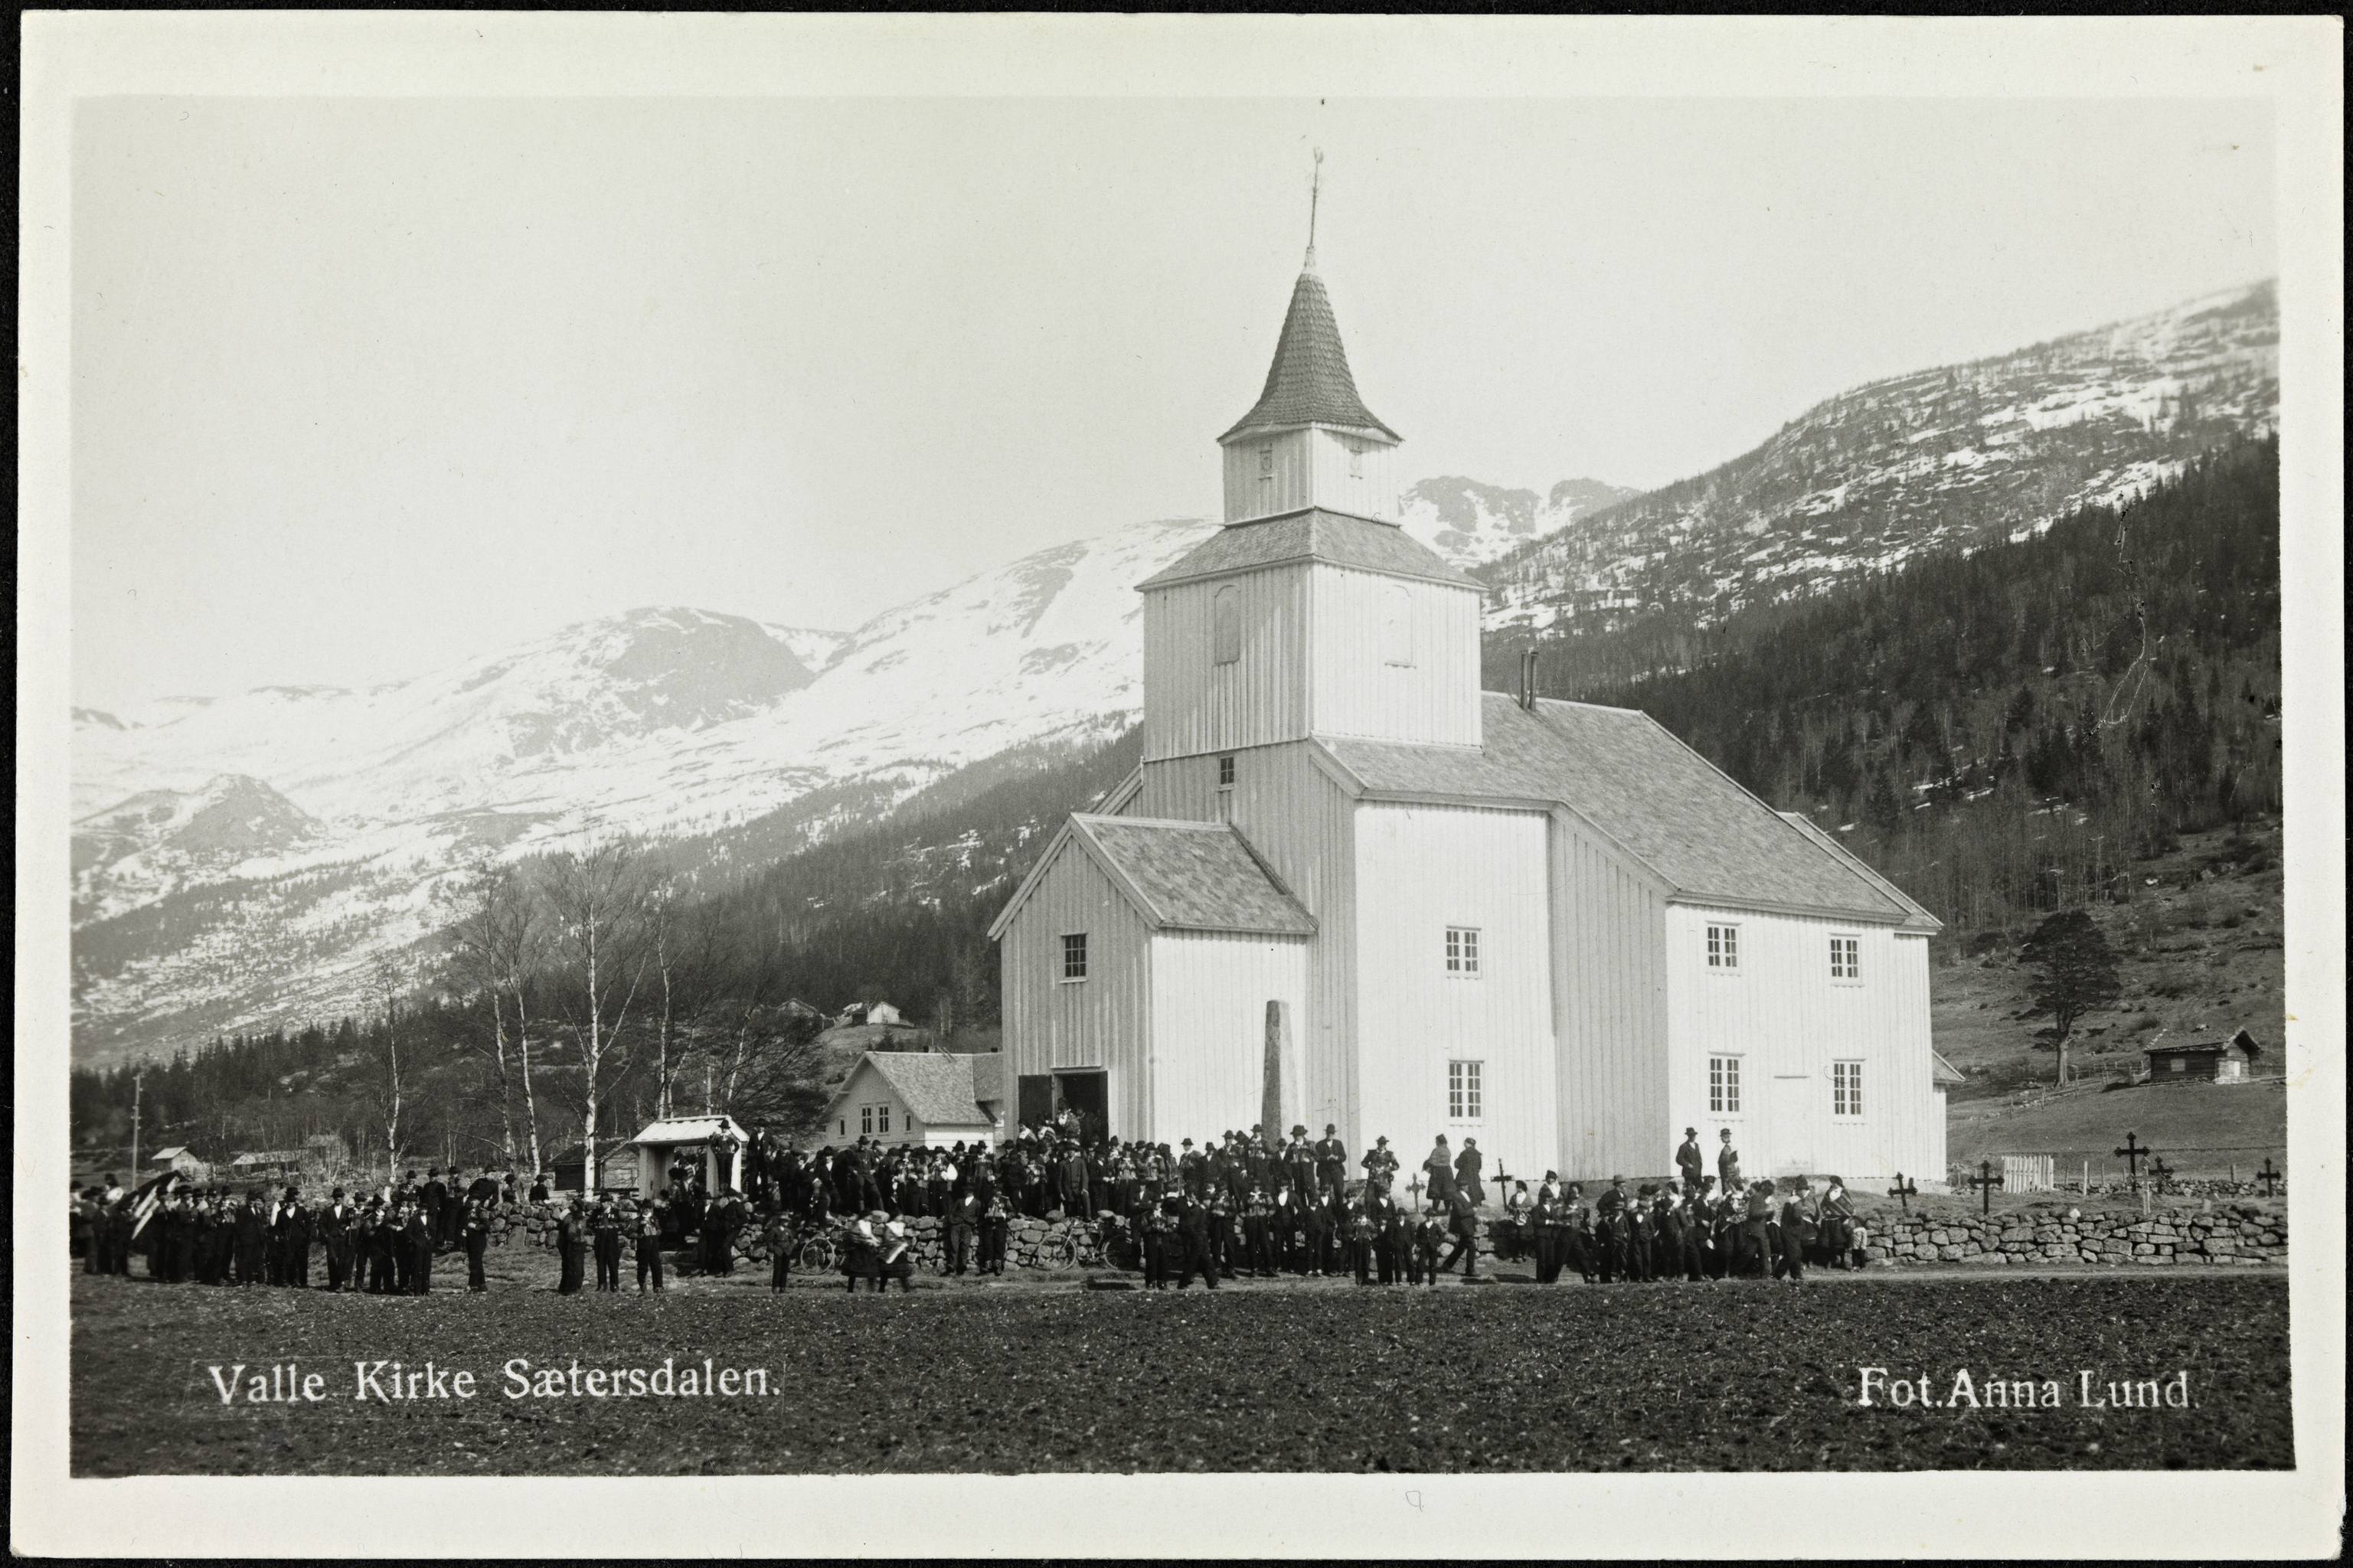 Valle Kirke Sætersdalen